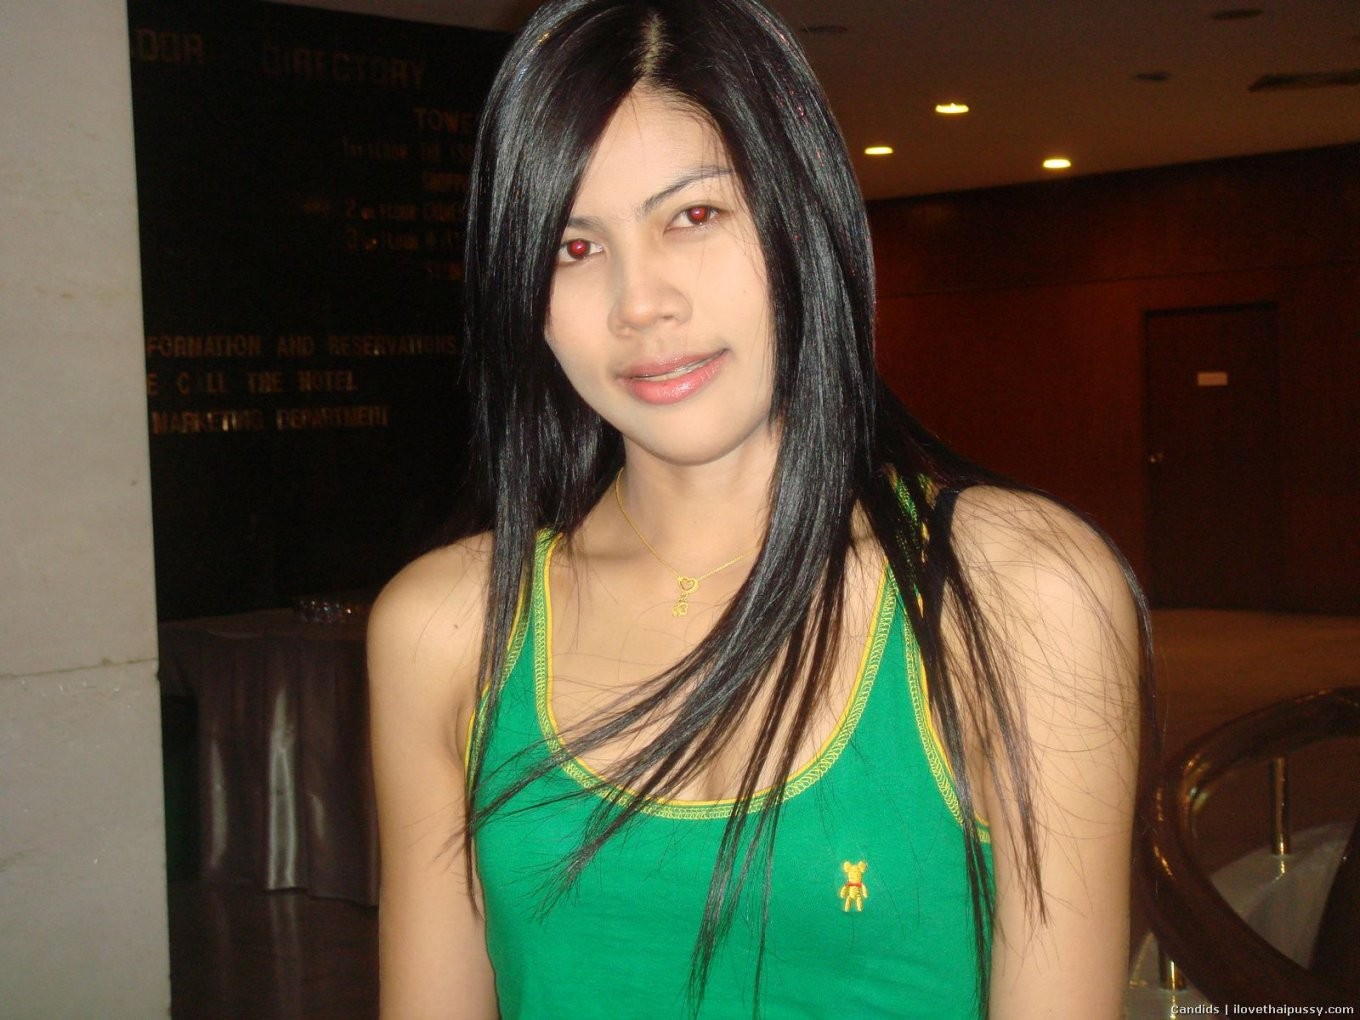 タイの売春婦が素手でドギー・スタイルで顔を下に向けてケツを上げている。
 #67671601